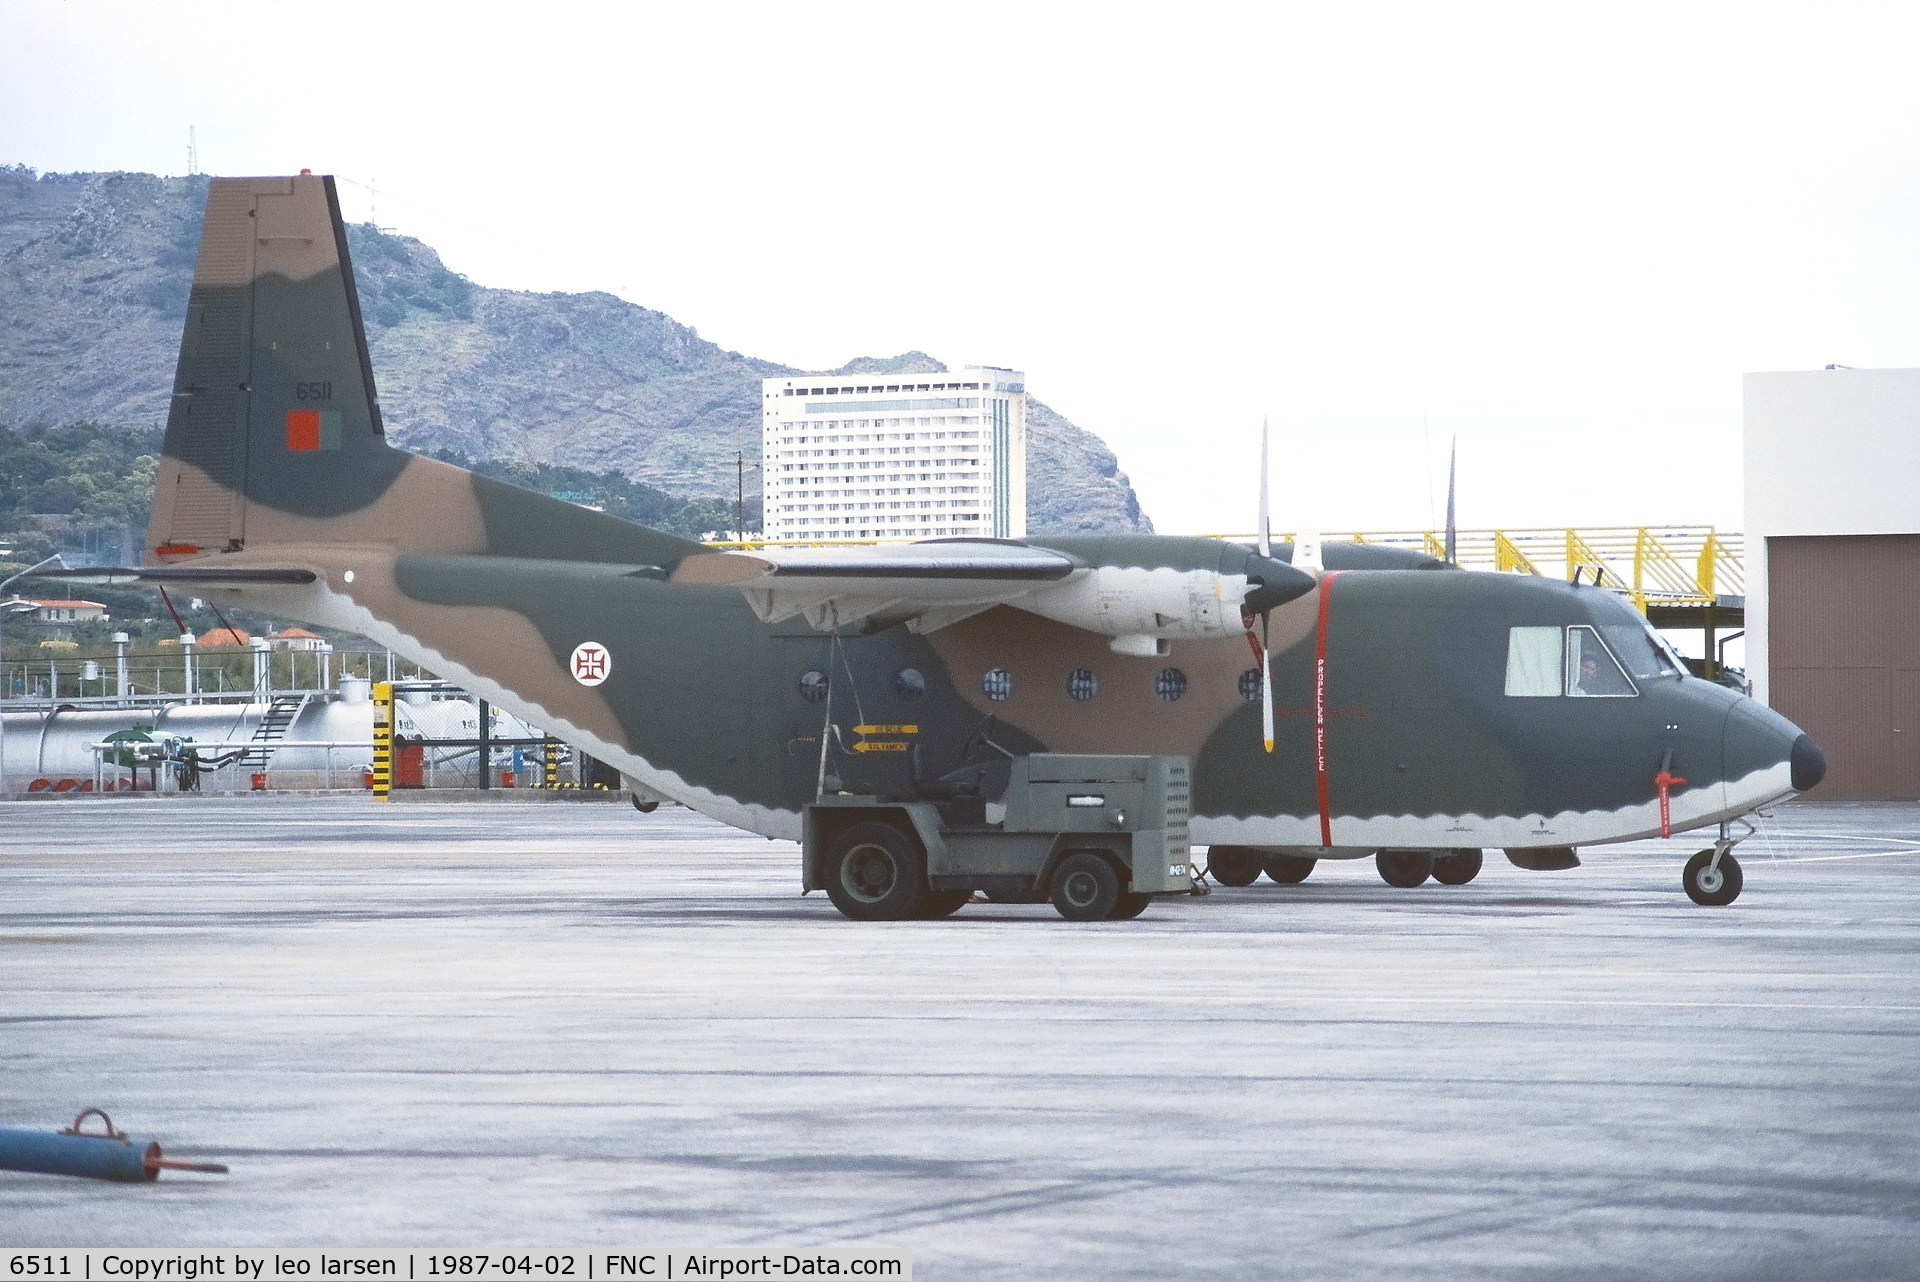 6511, 1975 CASA C-212-100 Aviocar C/N 35, Funchal 2.4.1987